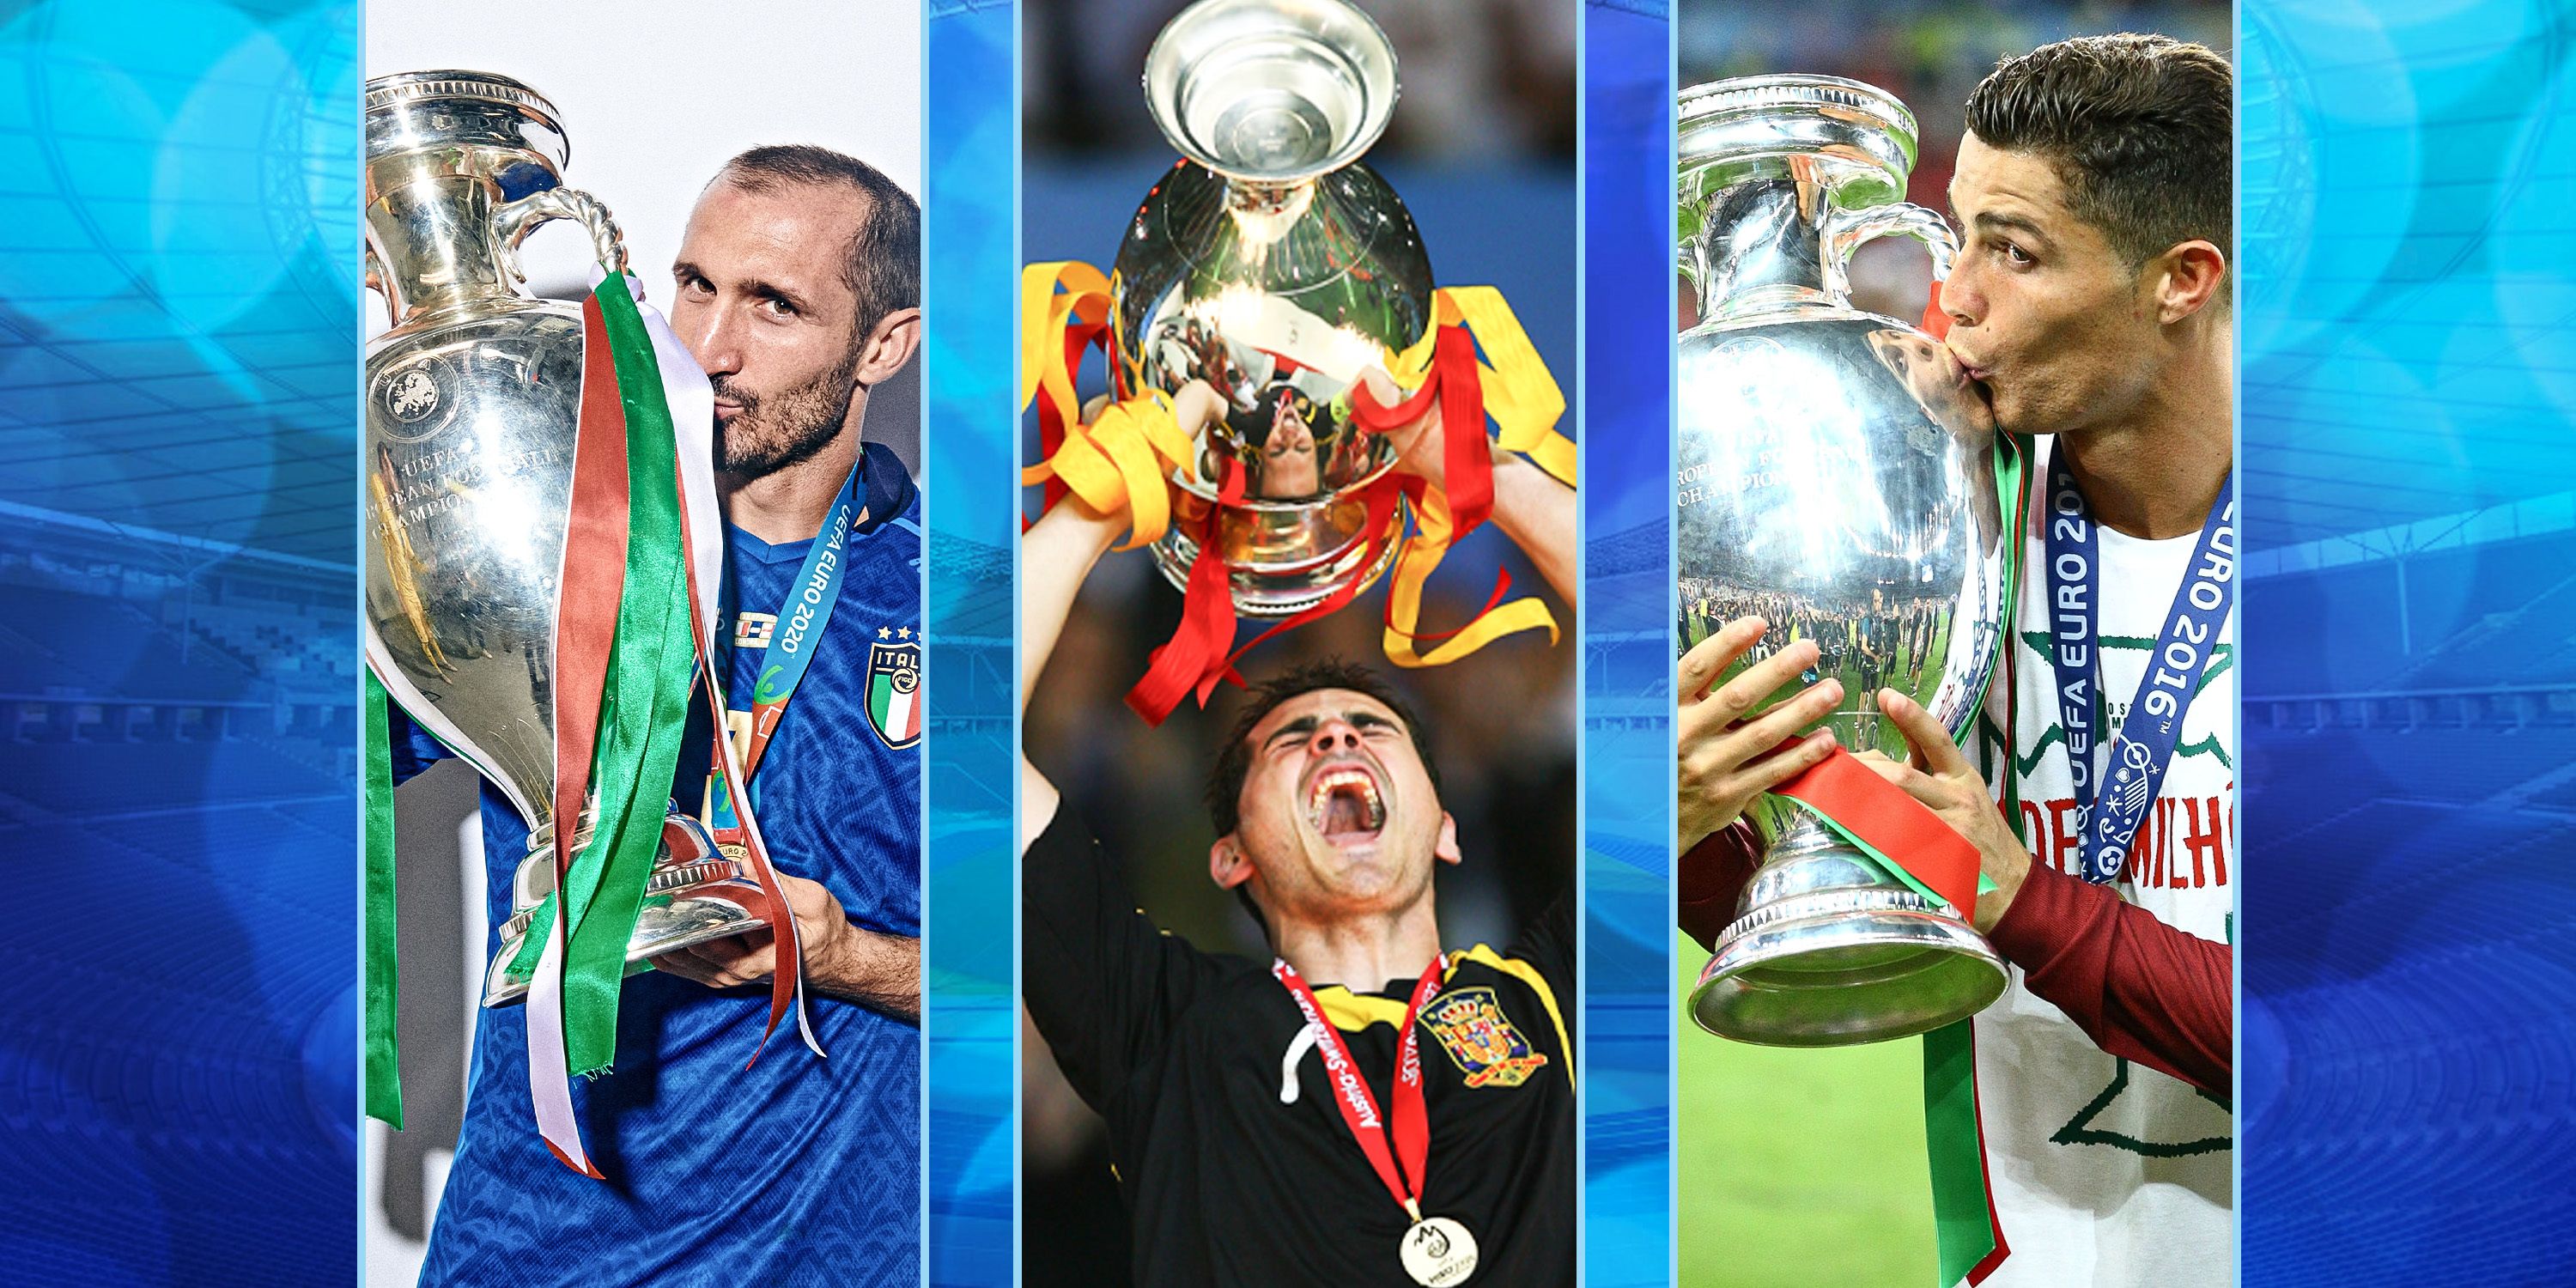 A composite image of European Championship winners Giorgio Chiellini, Iker Casillas and Cristiano Ronaldo